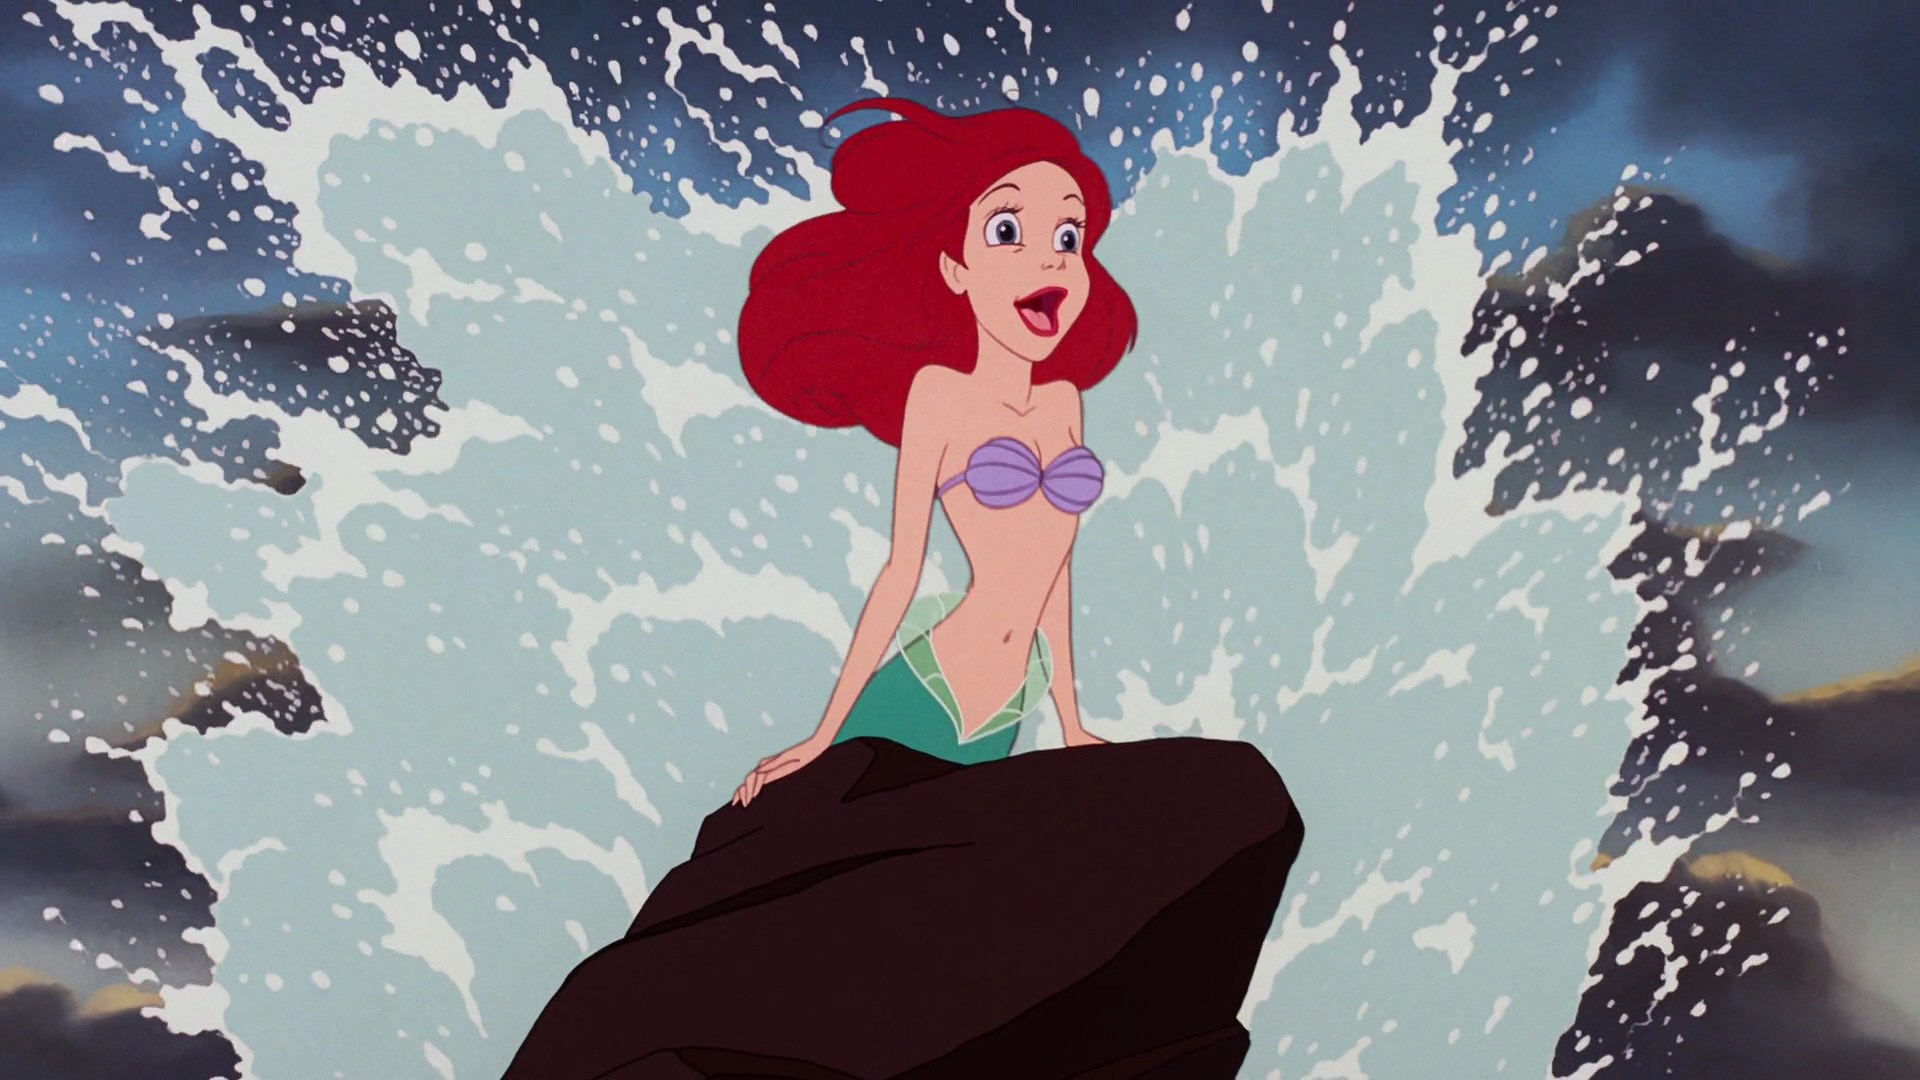 Ariel The Little Mermaid Girl Mermaid Red Hair The Little Mermaid Wave 1920x1080